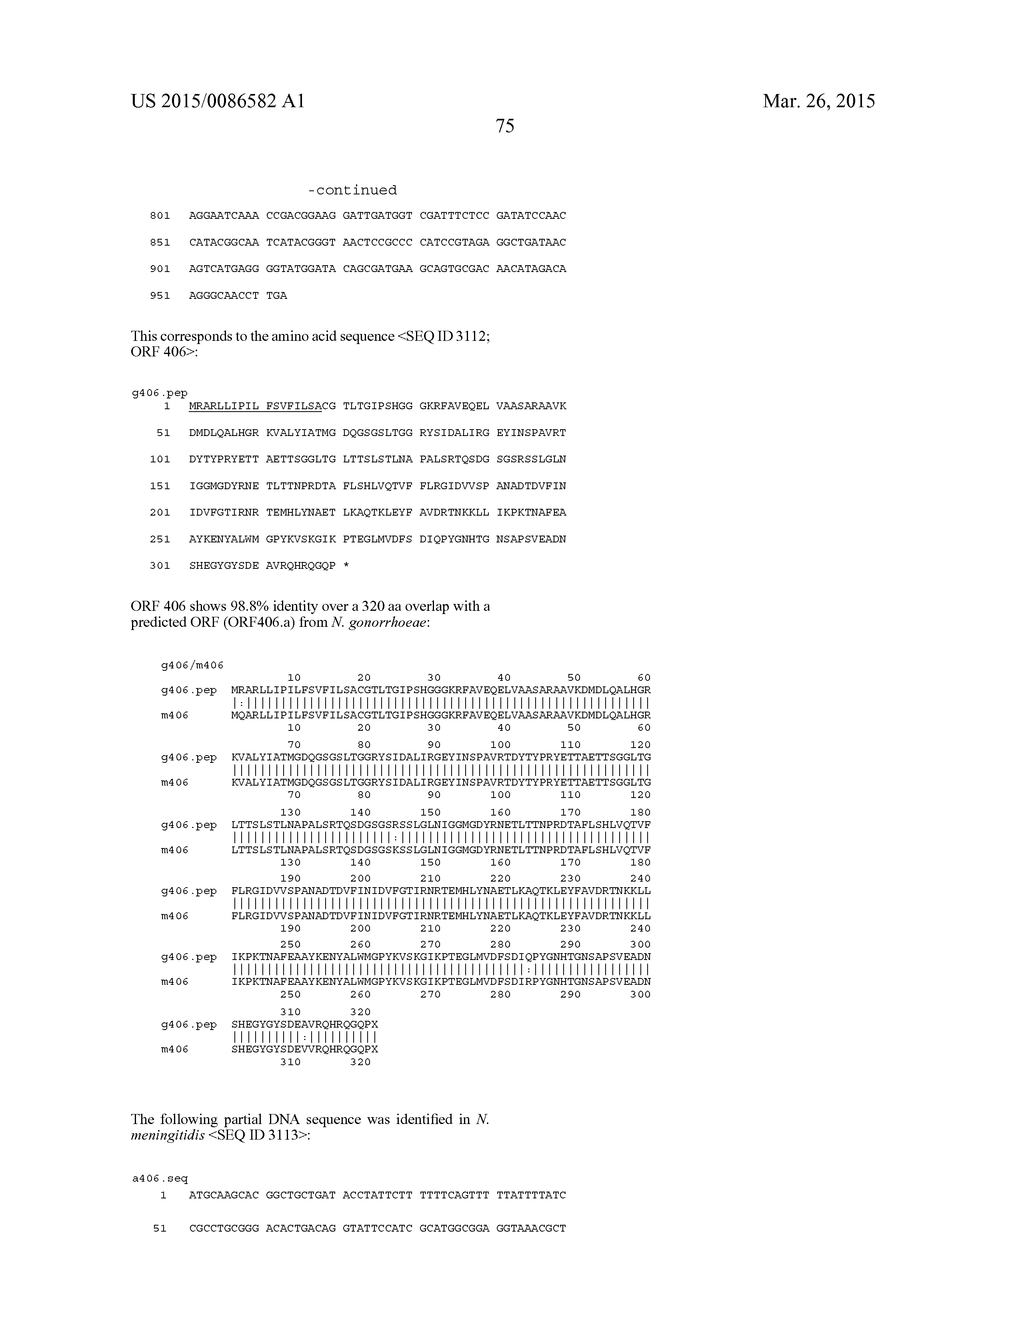 NEISSERIA MENINGITIDIS ANTIGENS AND COMPOSITIONS - diagram, schematic, and image 107